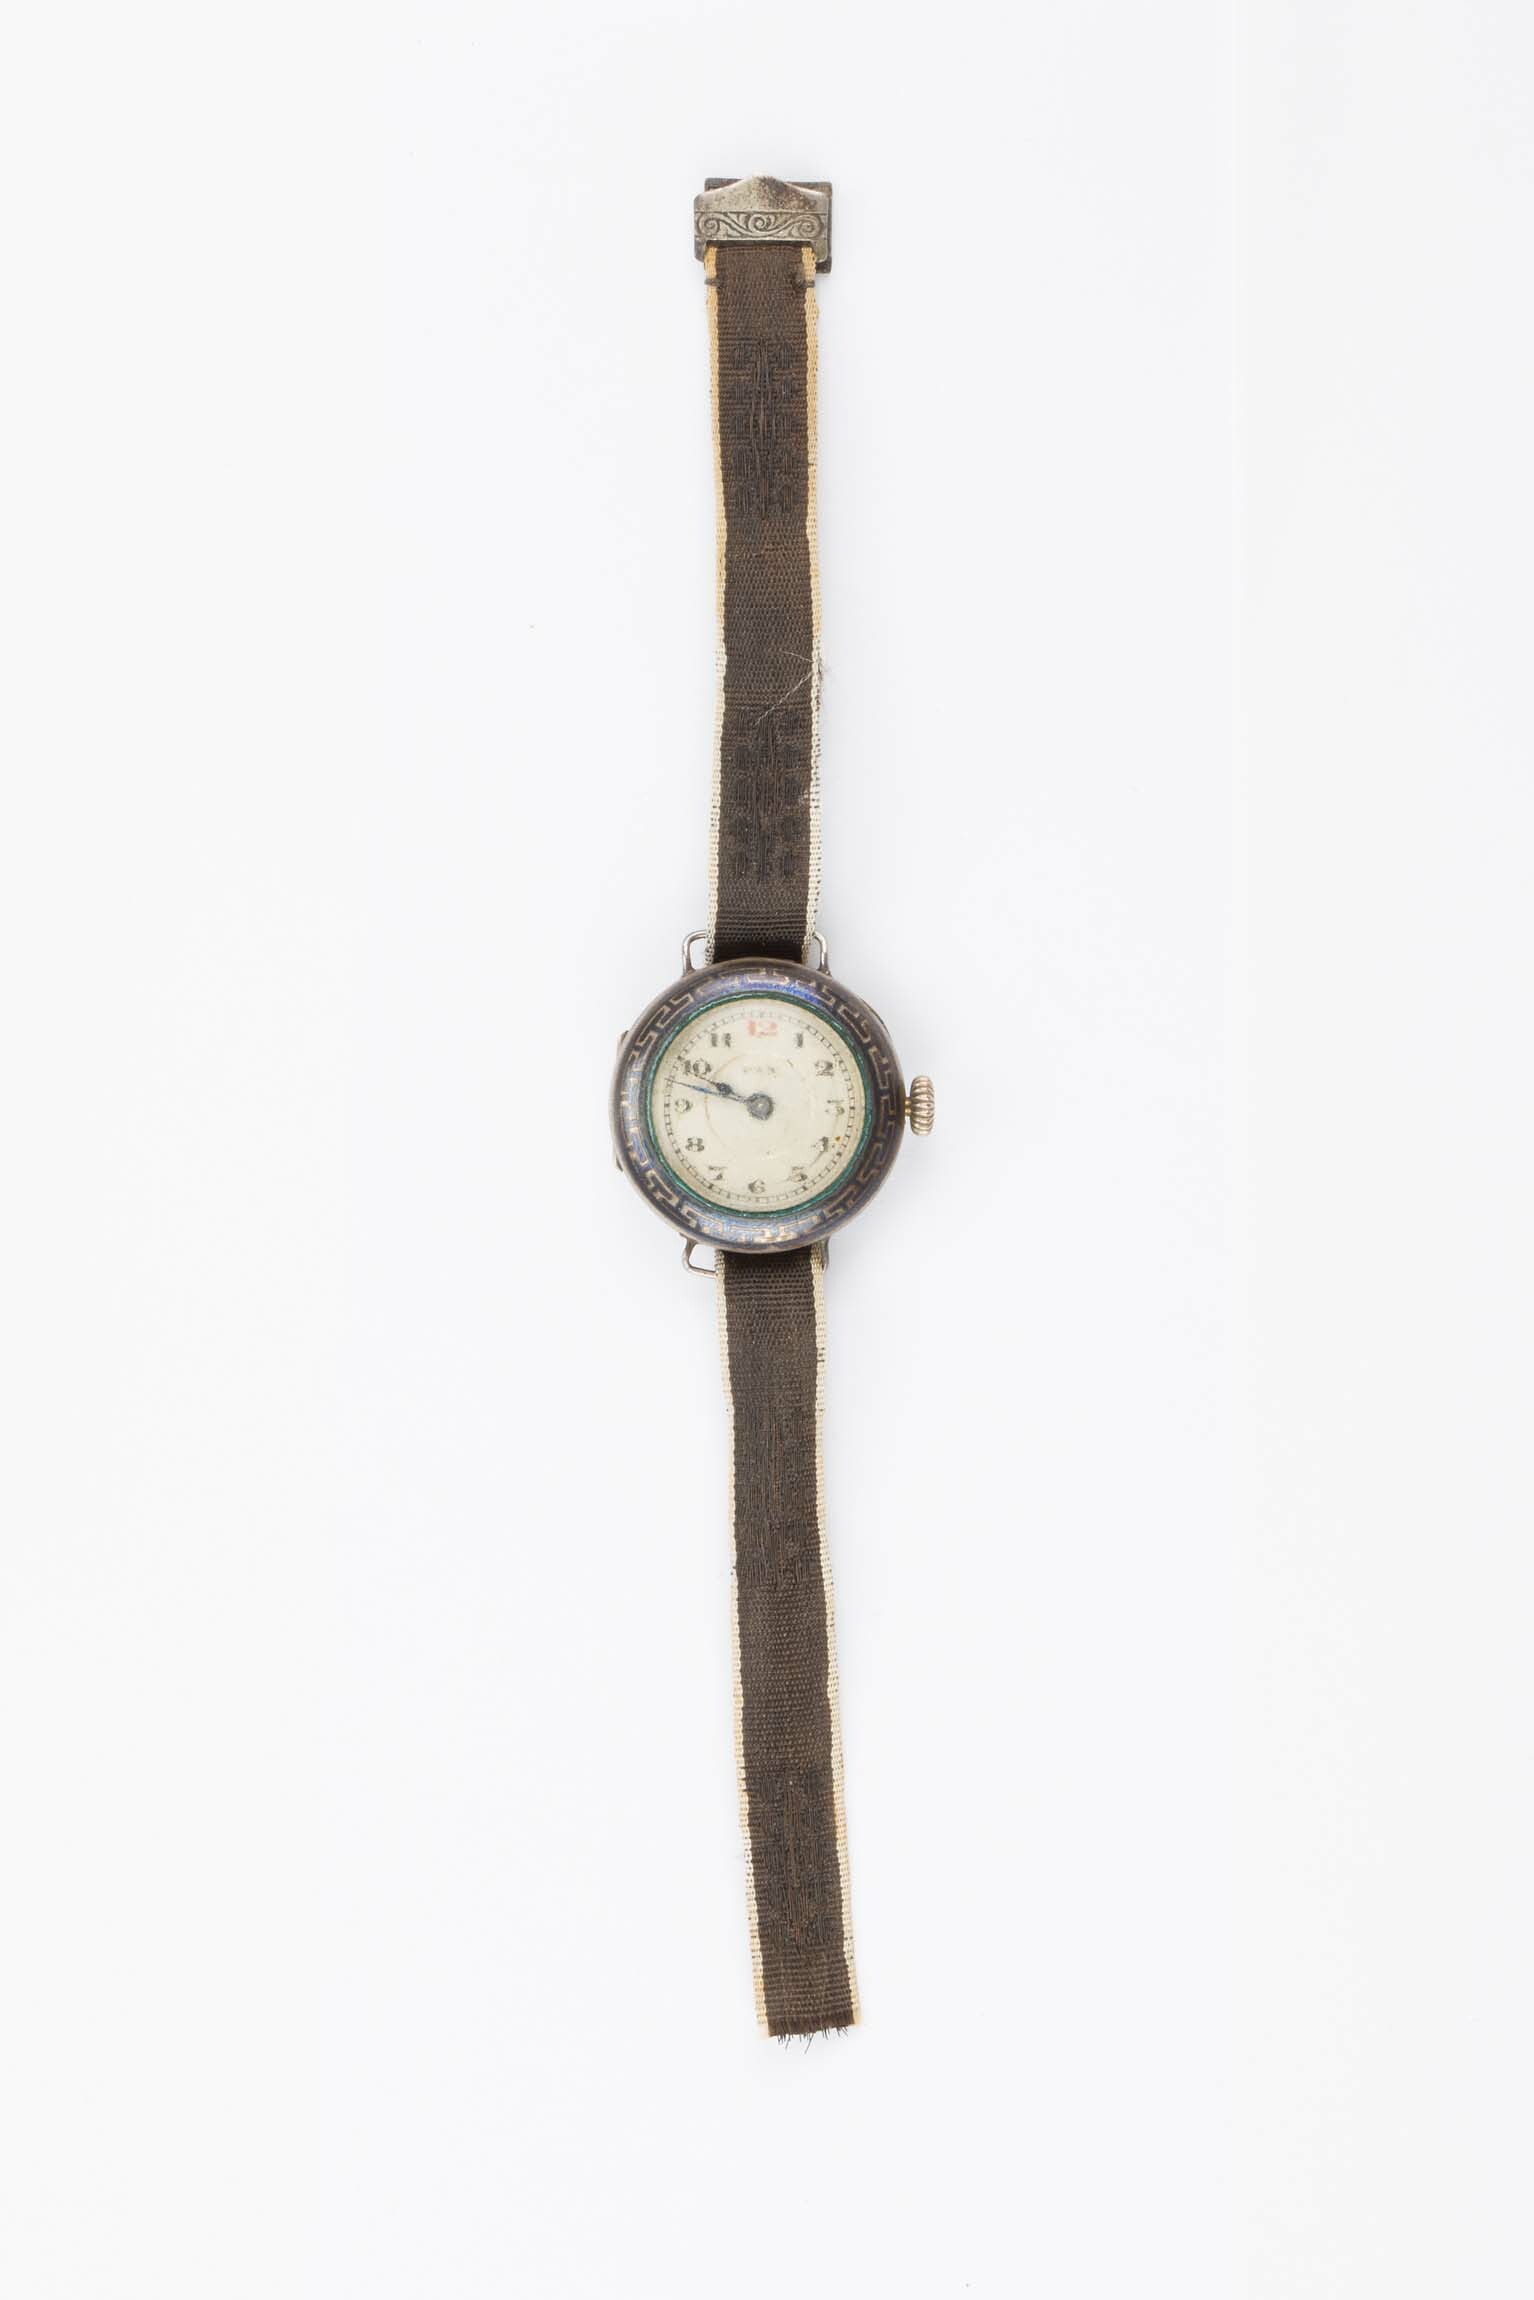 Armbanduhr Pax, Schweiz, um 1925 (Deutsches Uhrenmuseum CC BY-SA)